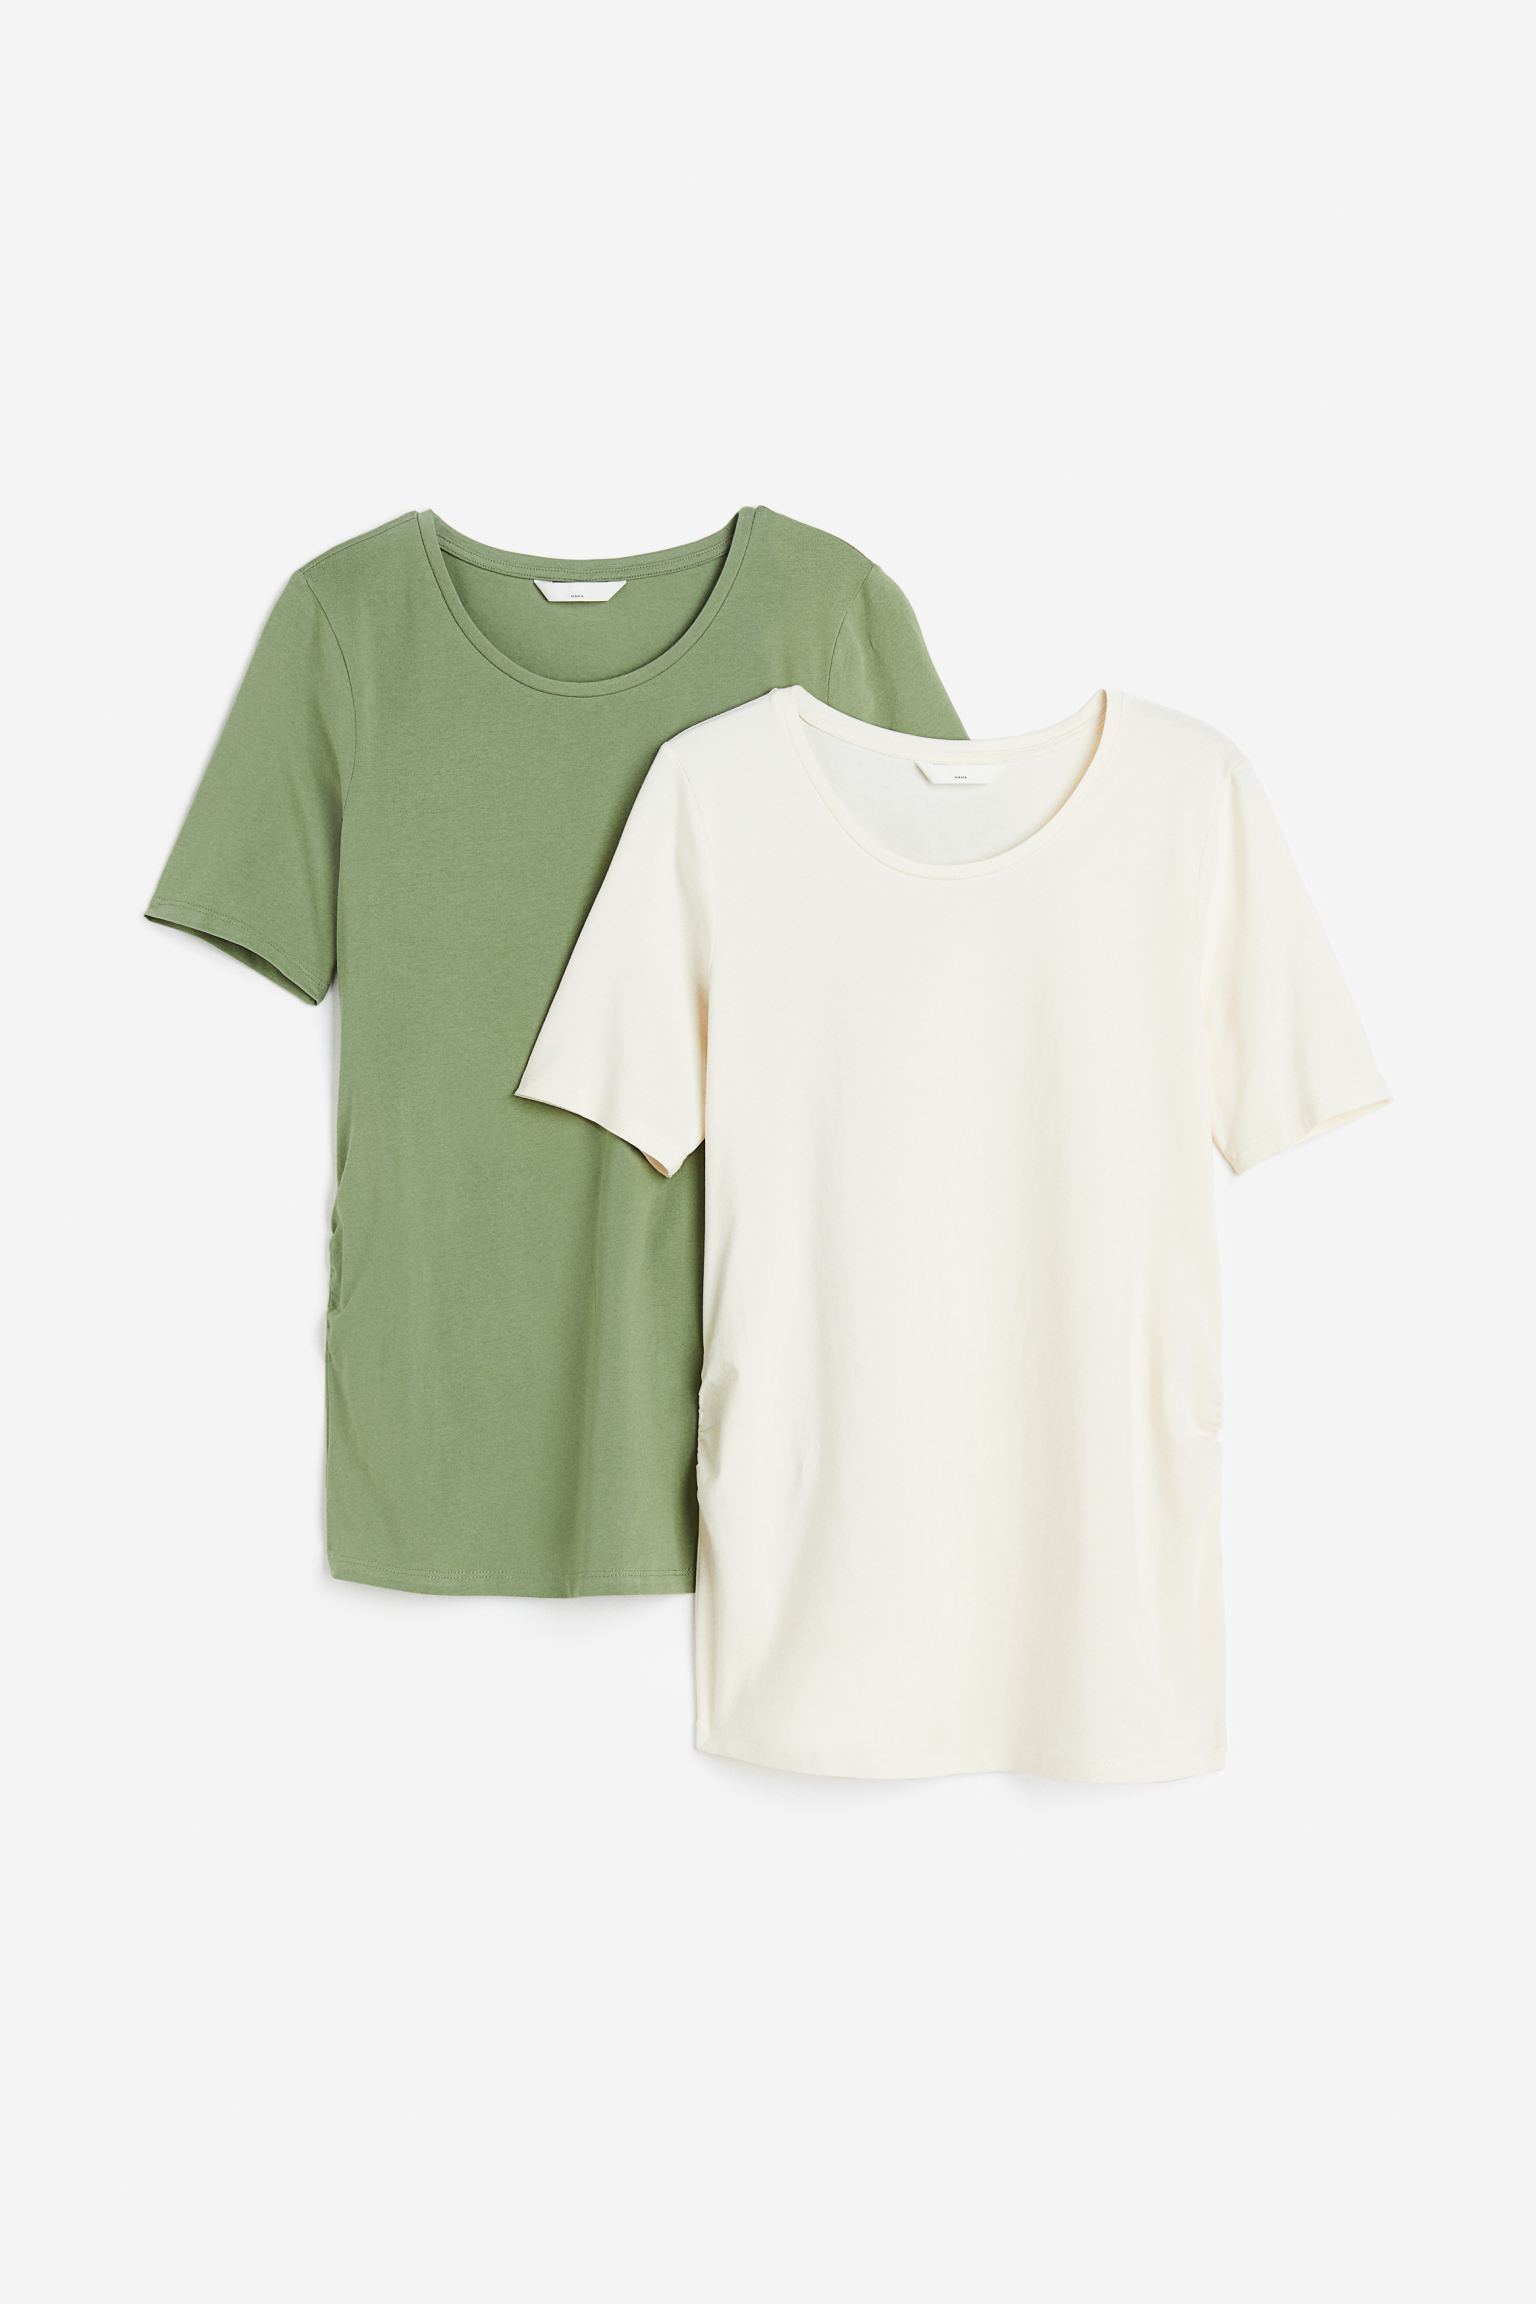 Комплект футболок женских H&M 1090126017 зеленых XS (доставка из-за рубежа)